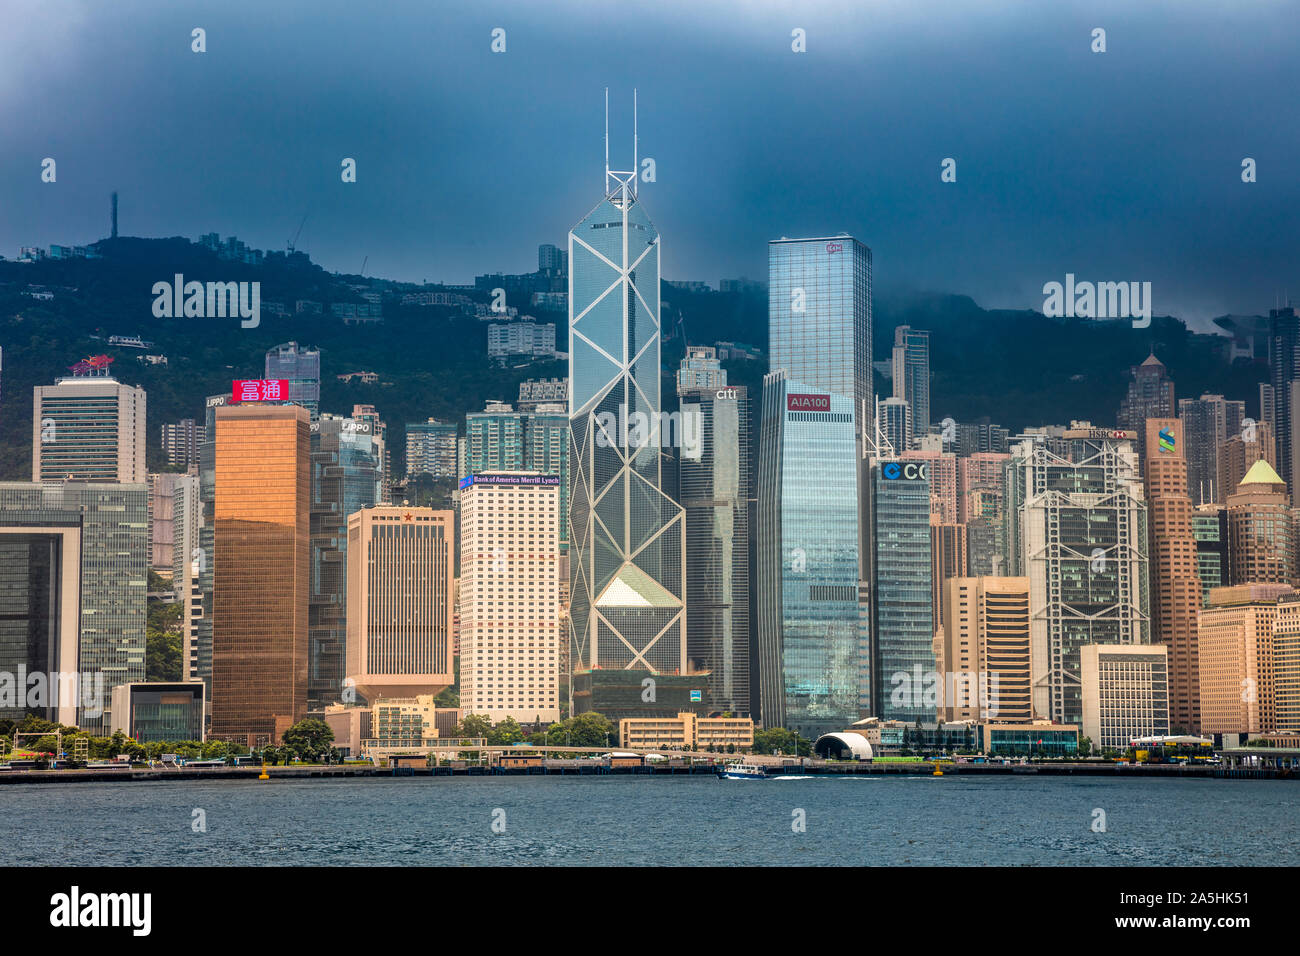 L'île de Hong Kong Skyline de Tsim Sha Tsui, avec l'IM Pei's iconic Banque de Chine, dans le centre Banque D'Images